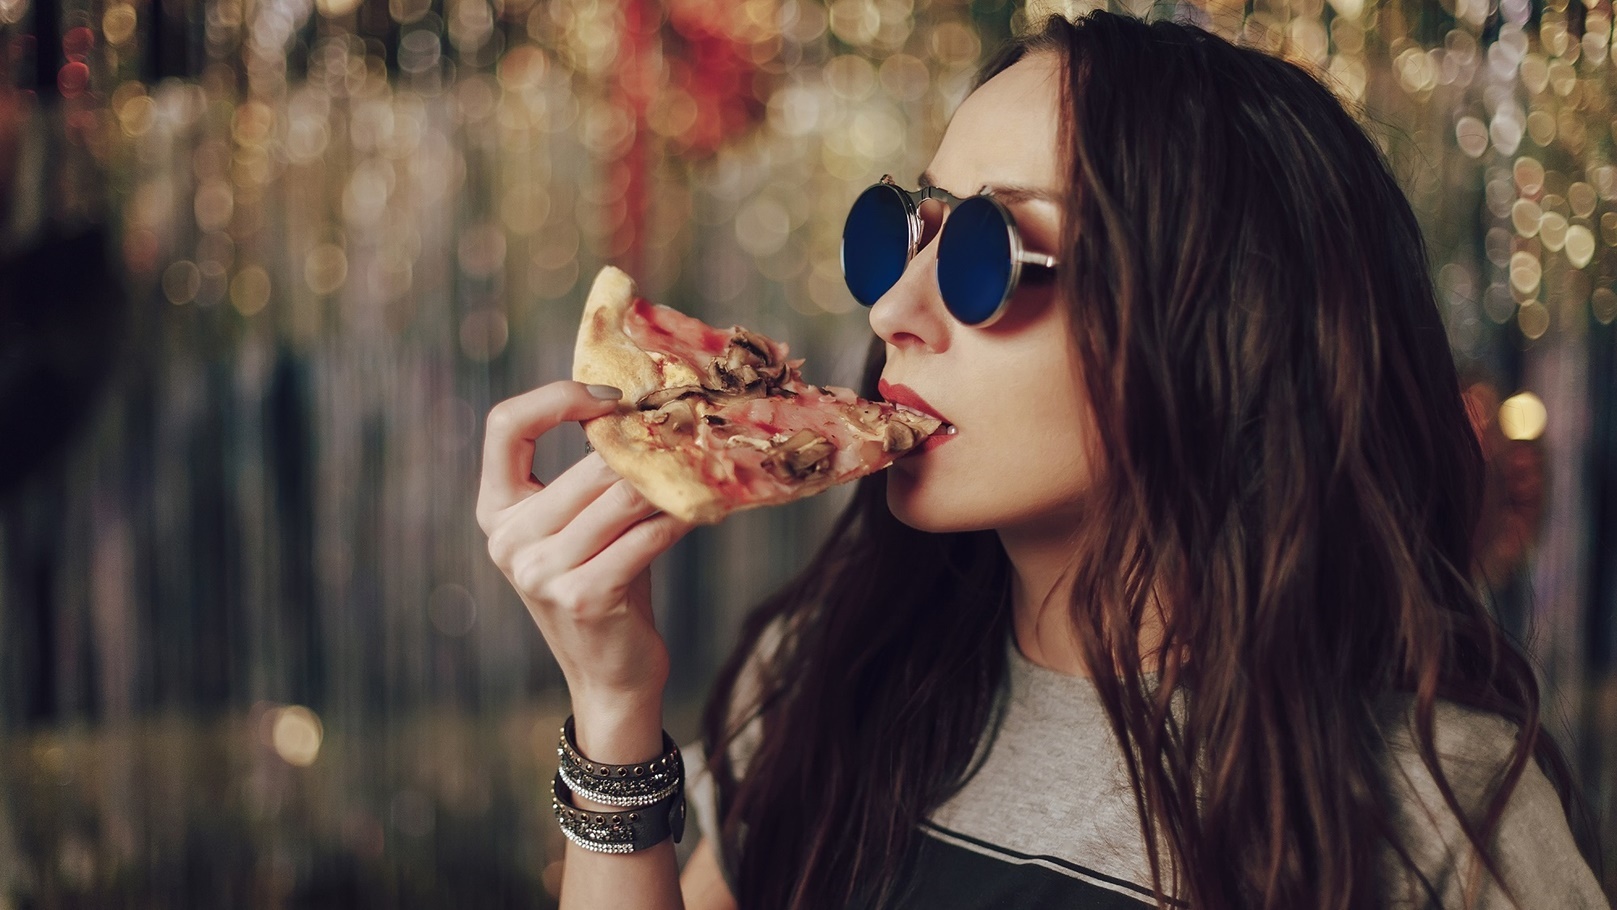 girl-eating-tasty-pizza-2021-08-26-15-55-08-utc